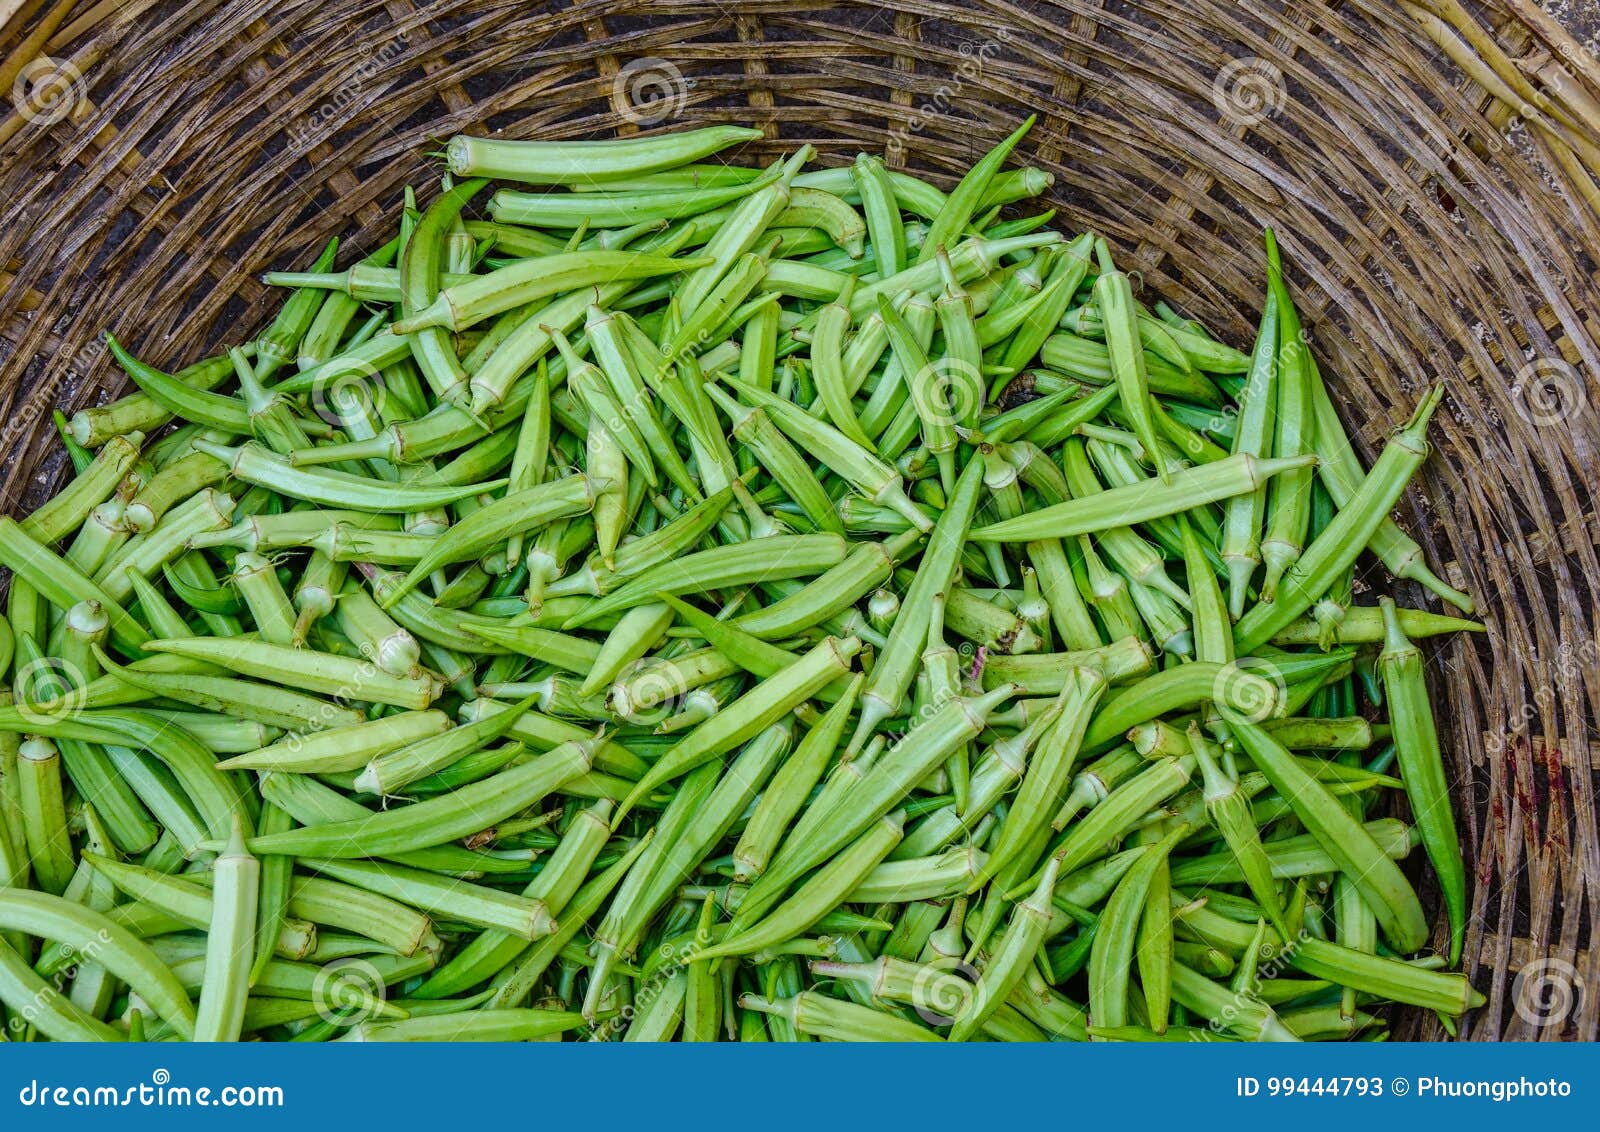 Image result for basket of okra